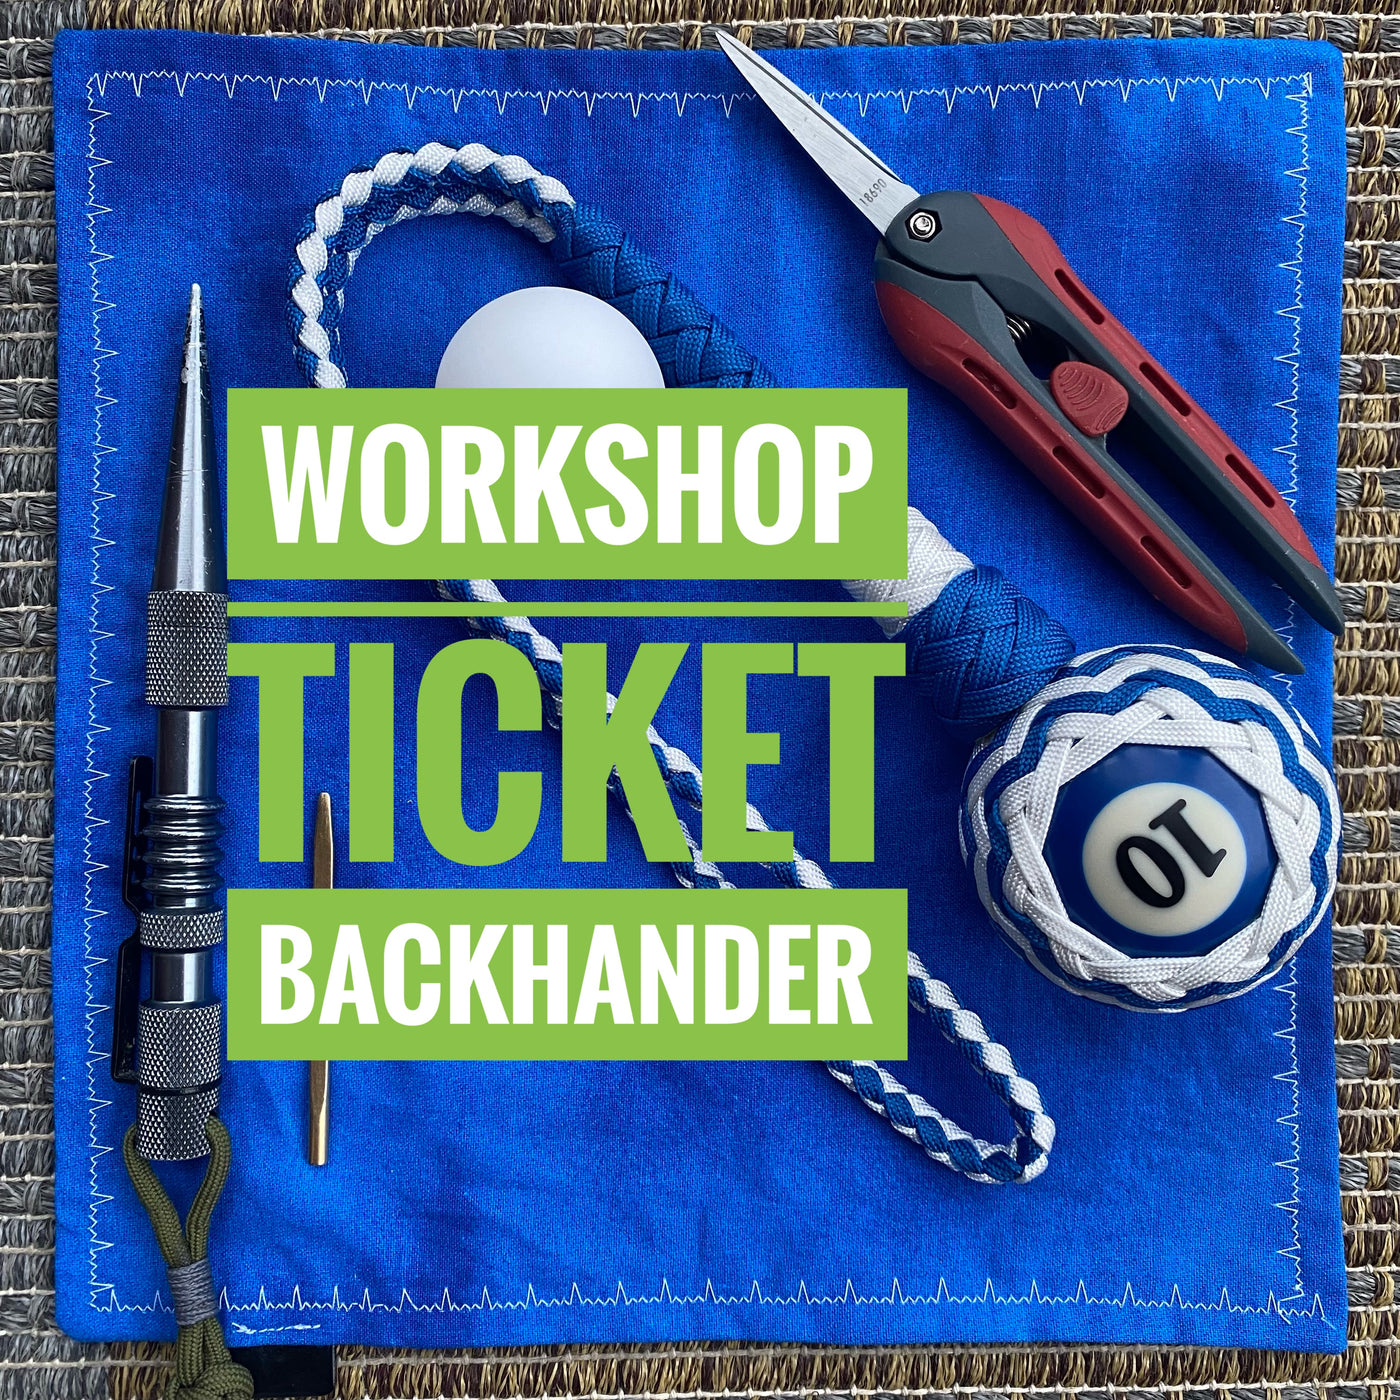 Zoom Workshop Ticket: Backhander, 2hrs interactive